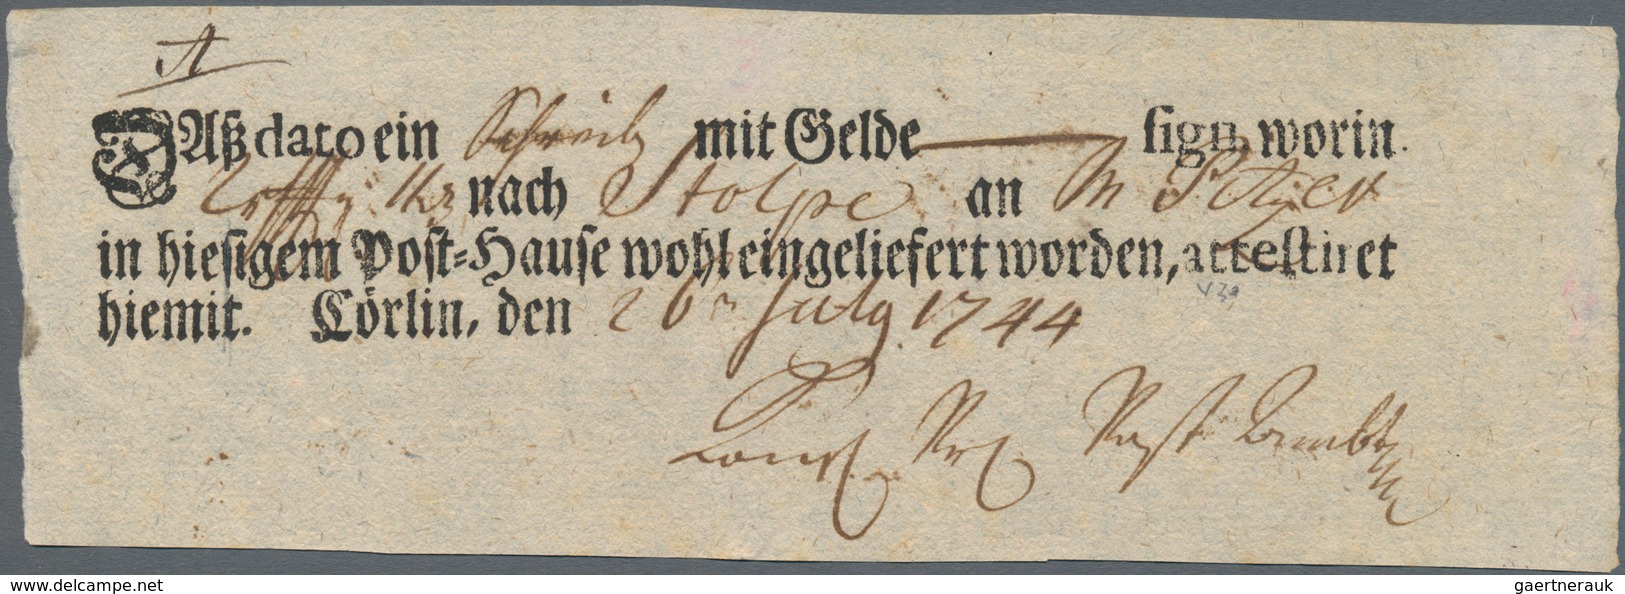 Altdeutschland - Vorphila: 1714 ab, reichhaltiger Posten mit ca.120 Belegen, dabei Einschreiben, Wer